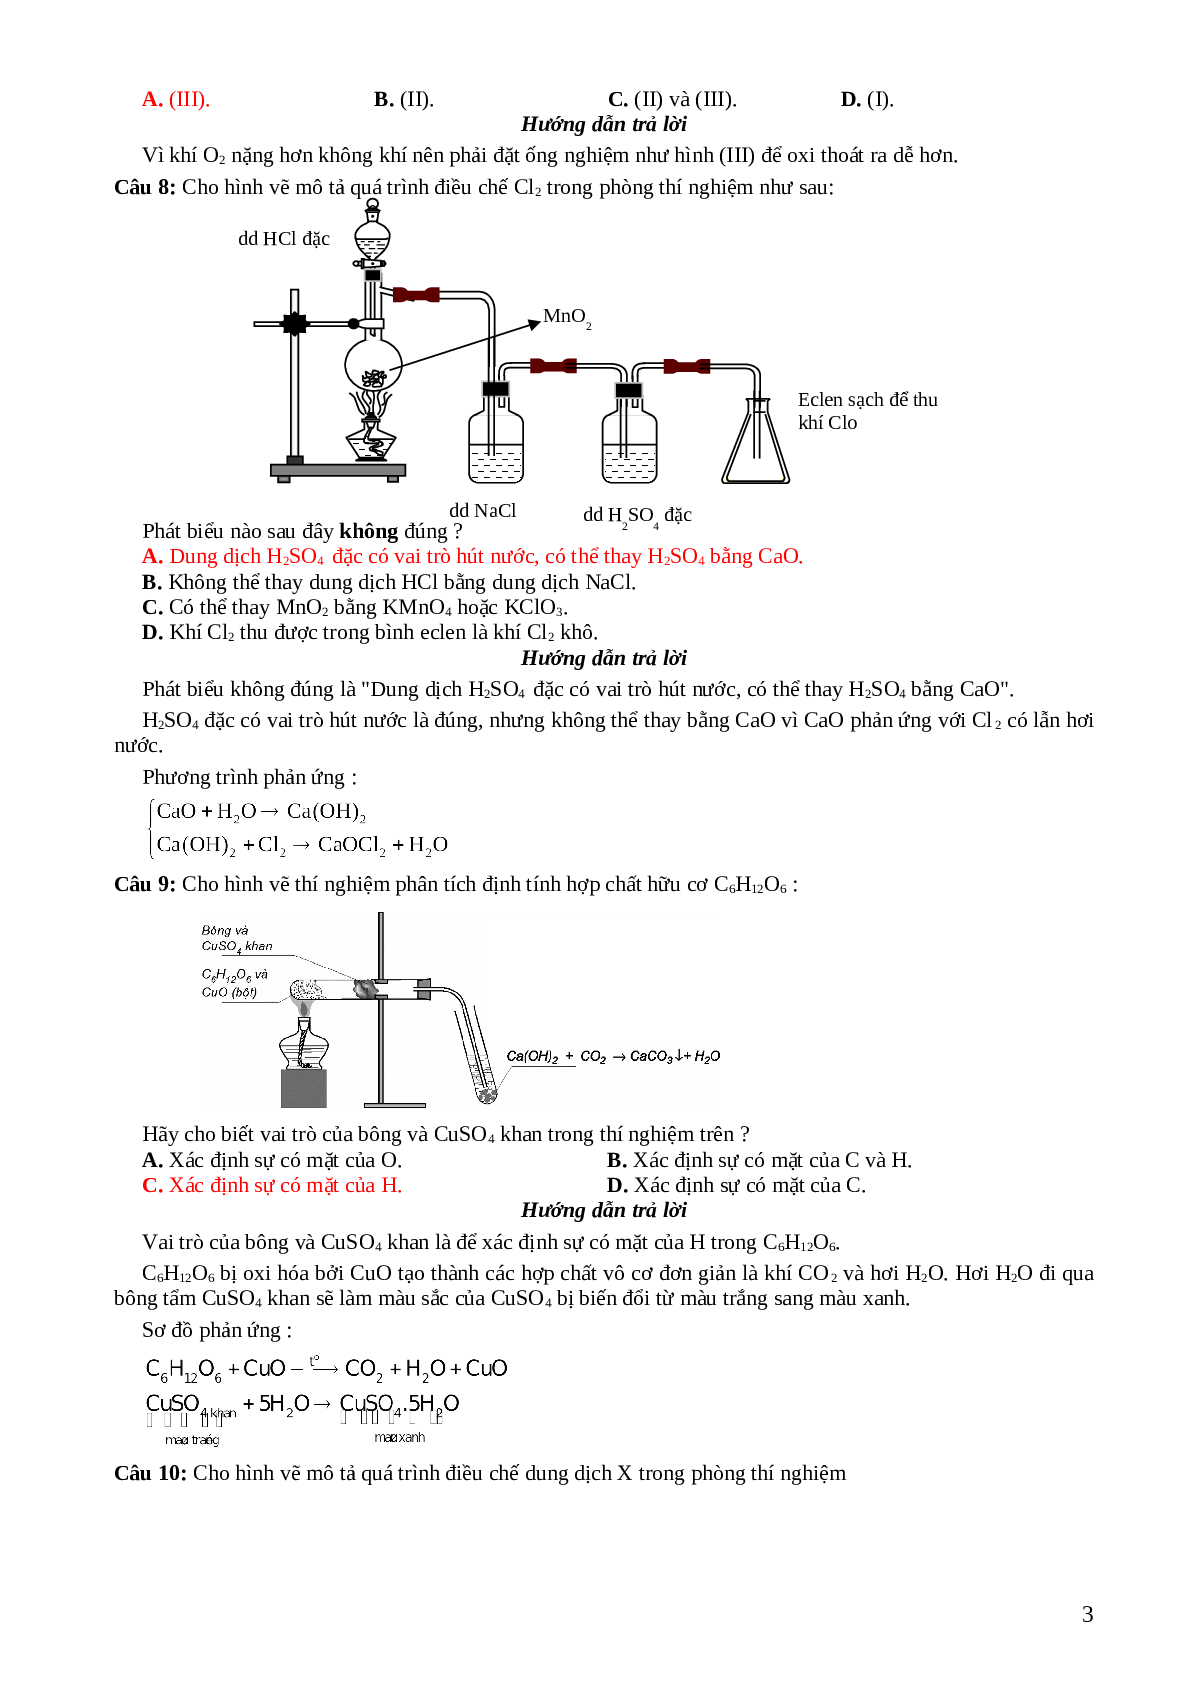 33 câu trắc nghiệm về hình  vẽ thí nghiệm hóa học lớp 12 có đáp án 2023 (trang 3)